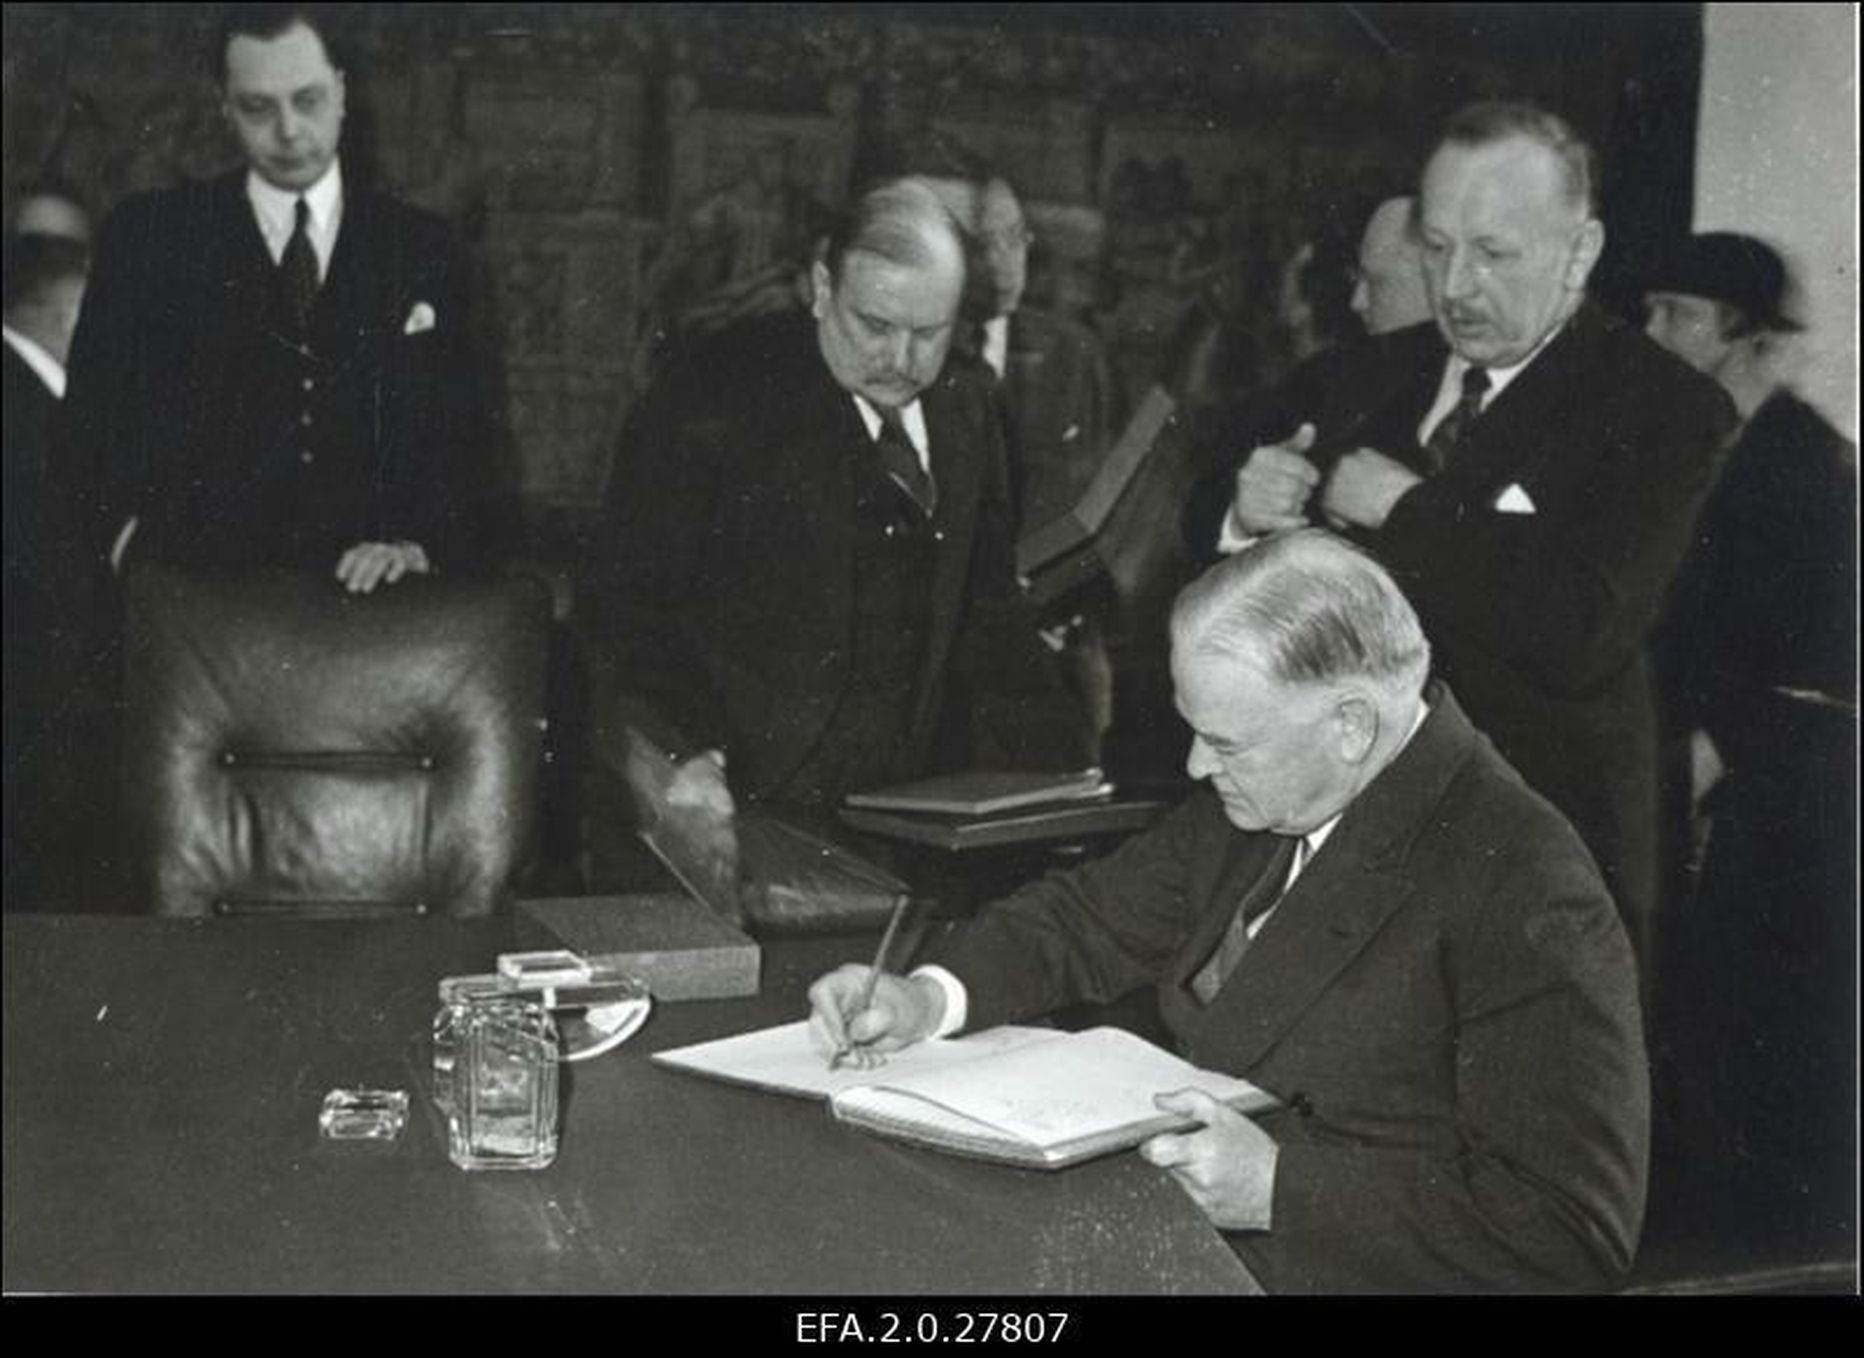 Ameerika Ühendriikide endine president Herbert Hoover kirjutab nime Tallinna Raekoja külalisraamatusse. Vasakult 3. Tallinna linnapea kindralmajor J. Soots. 